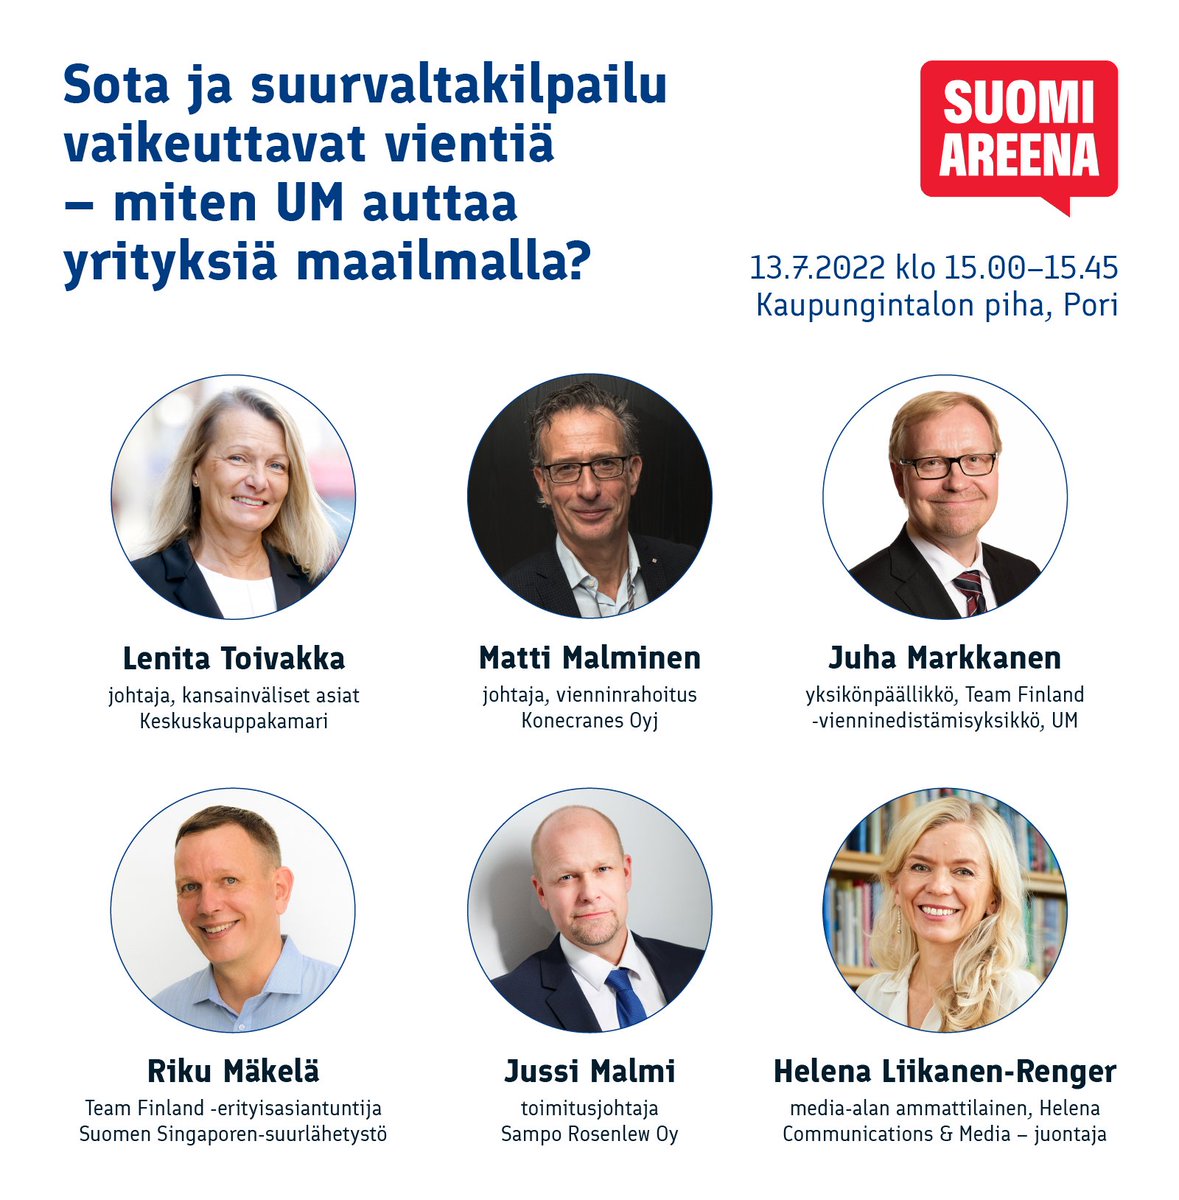 #SuomiAreena - panelistimme ovat timanttisia! 

💎 @ToivakkaLenita johtaa @K3FIN kansainvälisiä asioita. Hän on myös ex-ulkomaankauppa – ja kehitysministeri.

💎 @MattiMalminen on johtaja @Konecranes vastuualueinaan mm. vienninrahoitus, sanktiot ja vientivalvonta.